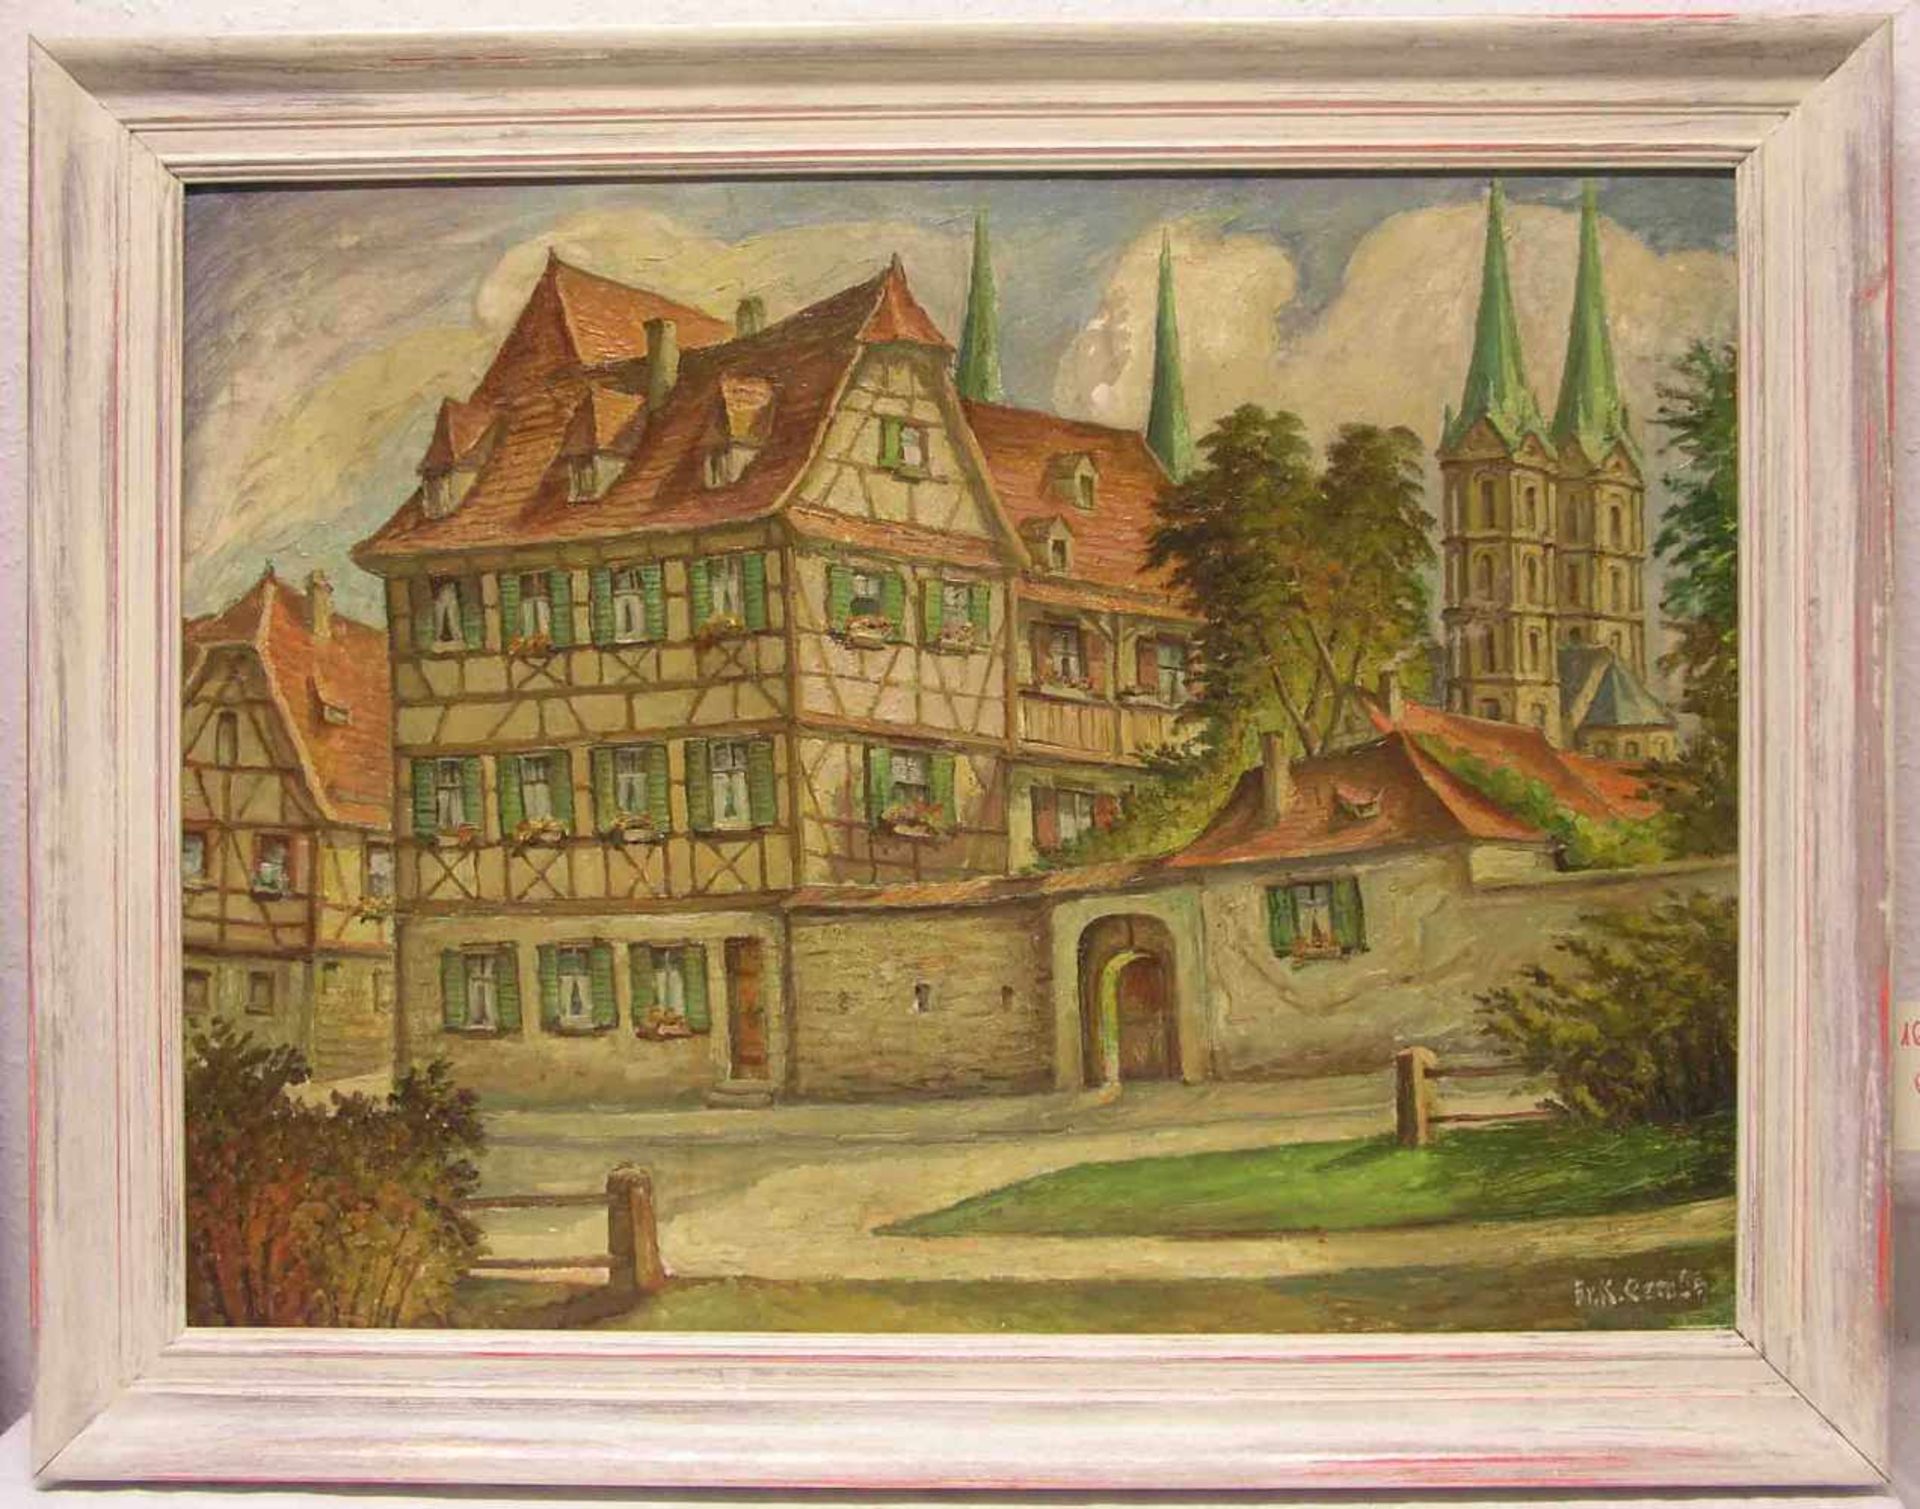 Gembs, Karl (1896 - 1963), Bamberger Maler: "Bamberg. Blick Richtung Dom". Öl/Lwd.,signiert, 57 x